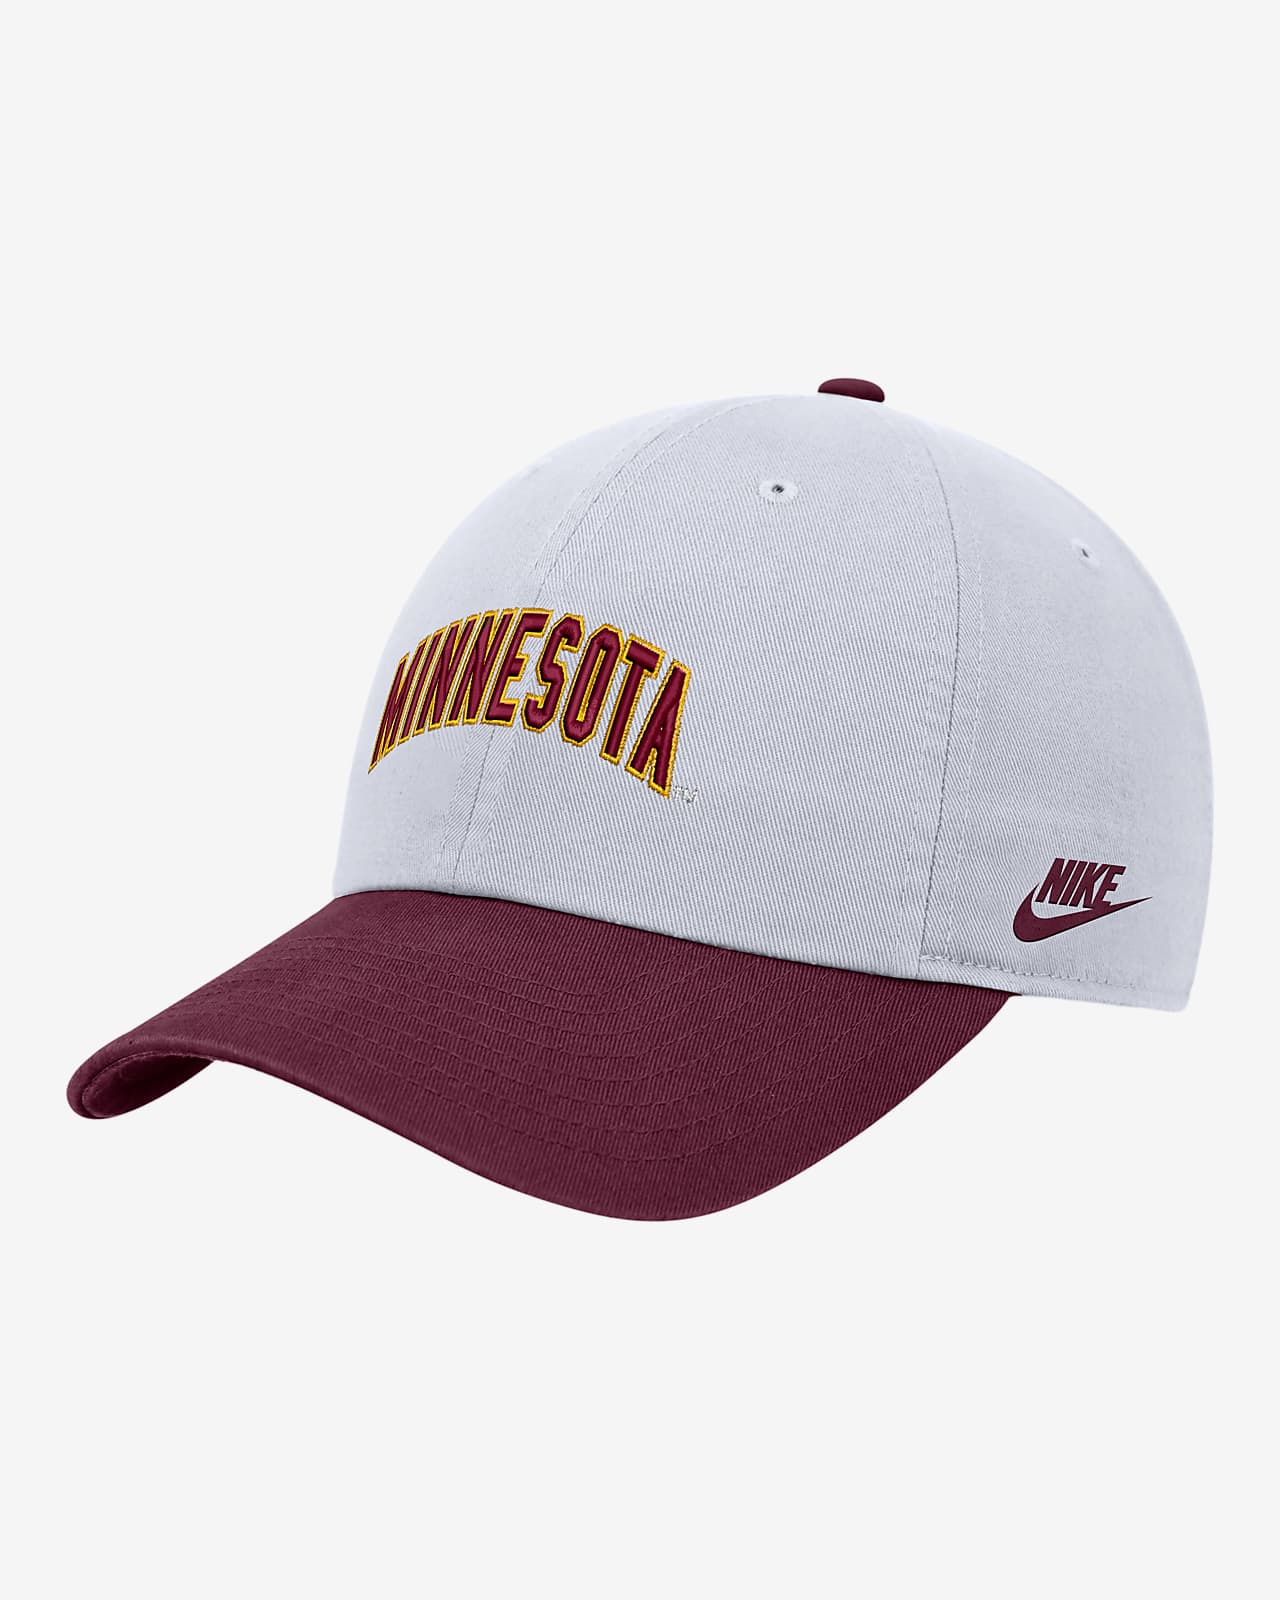 Minnesota Nike College Campus Cap